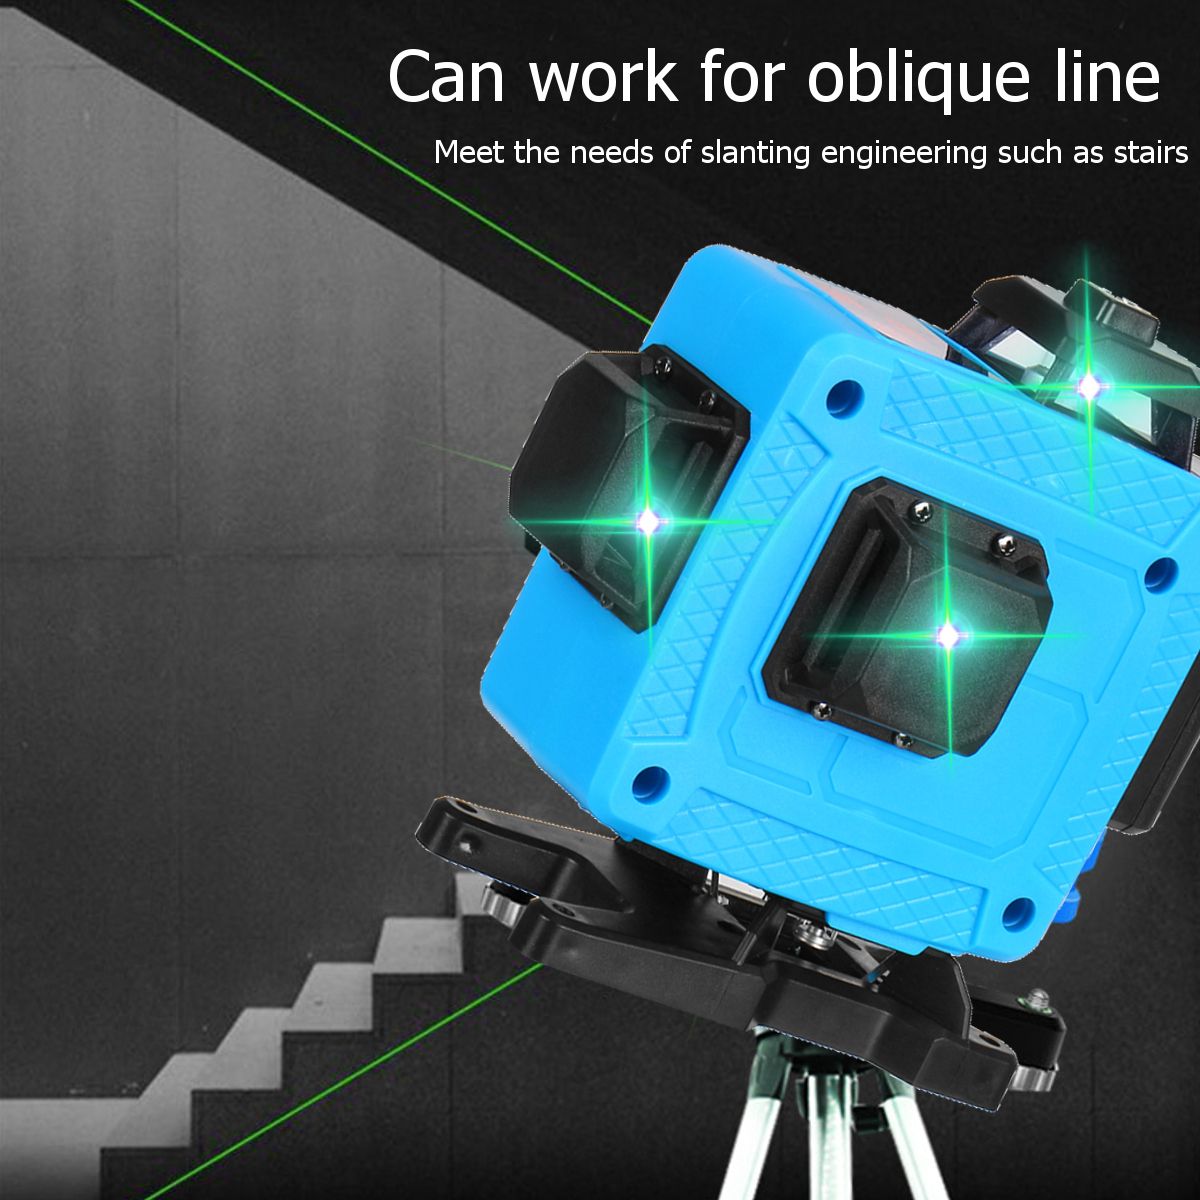 16-Line-4D-Laser-Level-Green-Light-Auto-Self-Leveling-Cross-360deg-Rotary-Measure-1740212